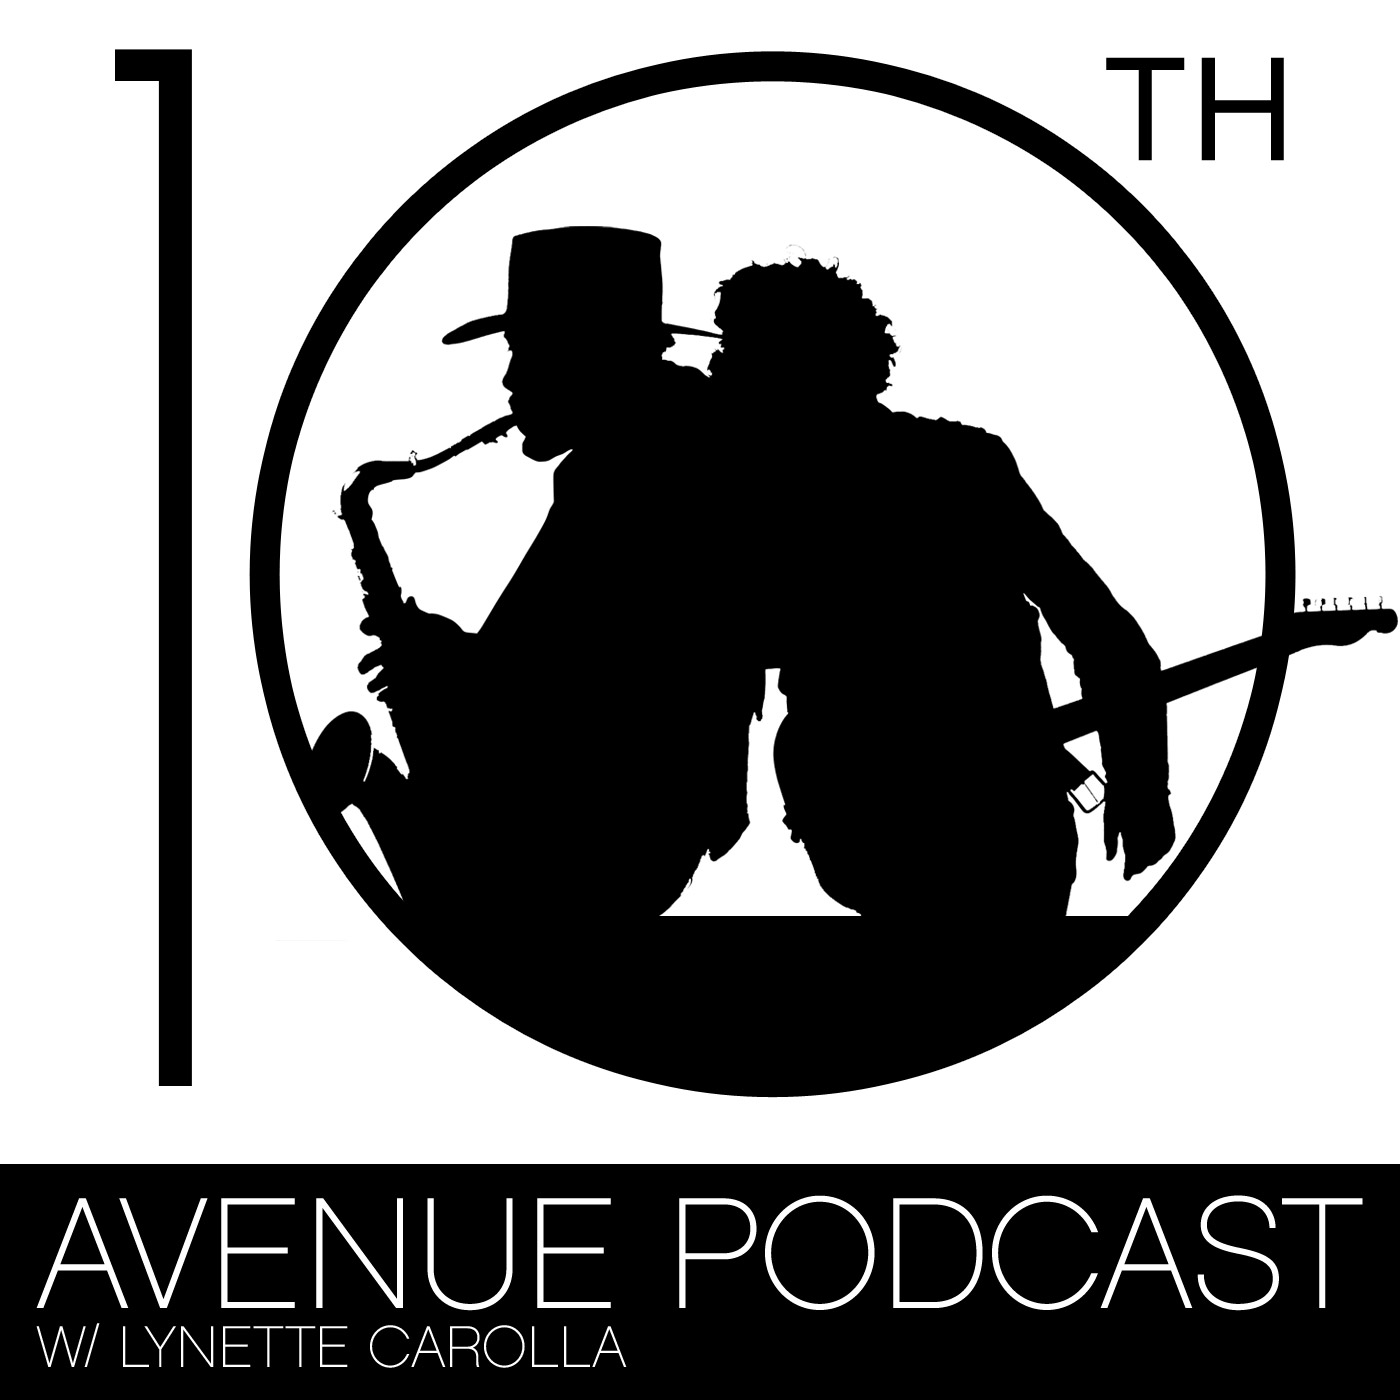 10th Avenue Podcast:PodcastOne / Carolla Digital